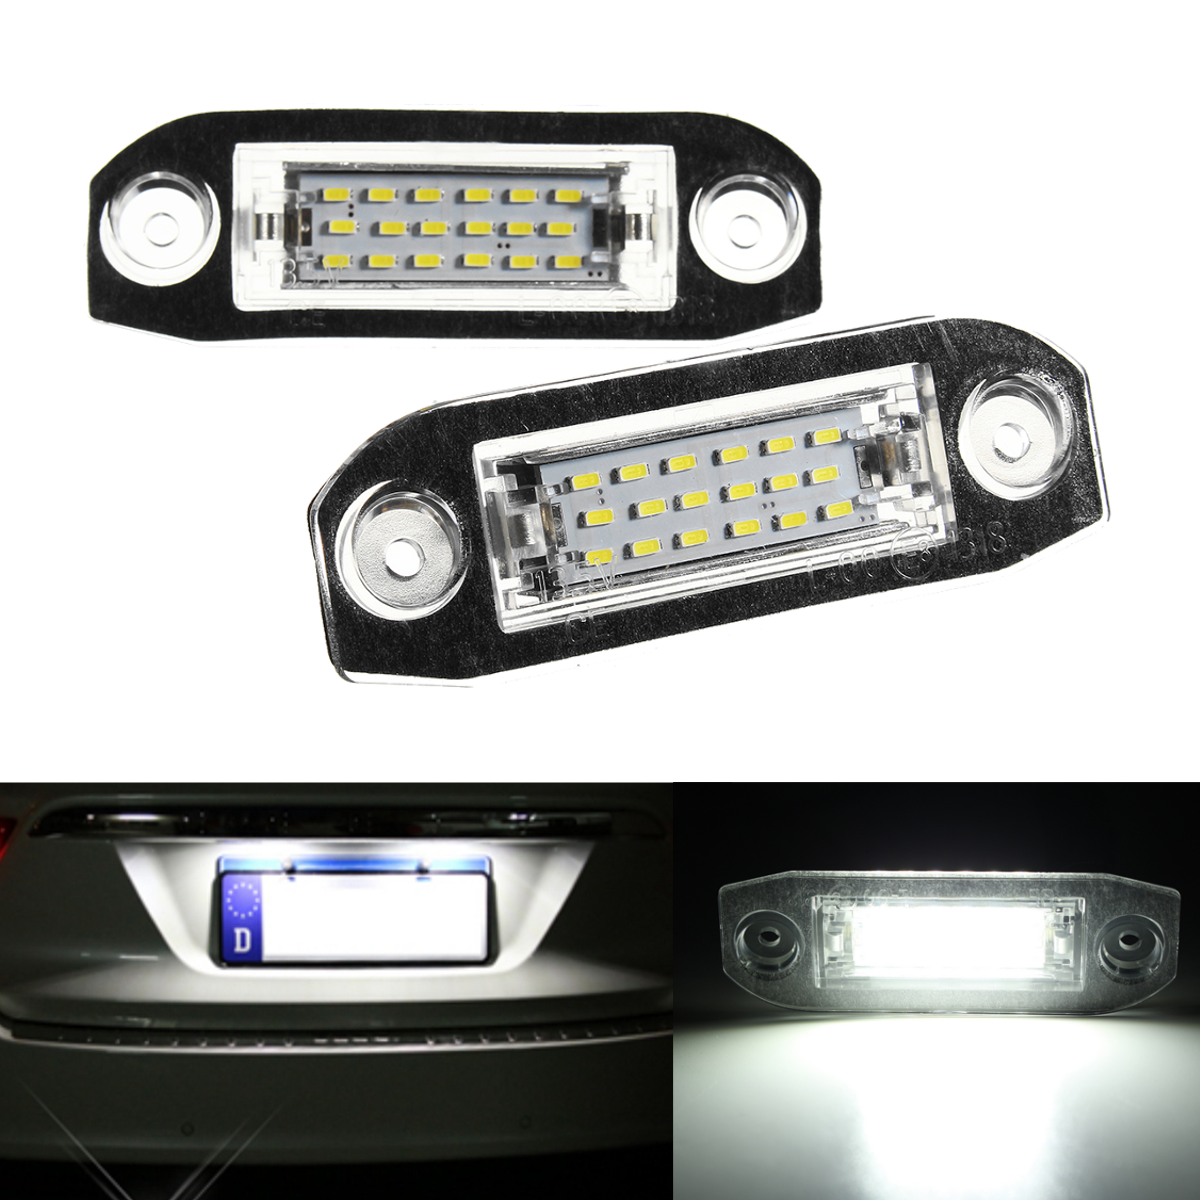 2x LED Licence Number Plate Light For Volvo C70 S40 S60 V50 V60 V70 XC60 XC90